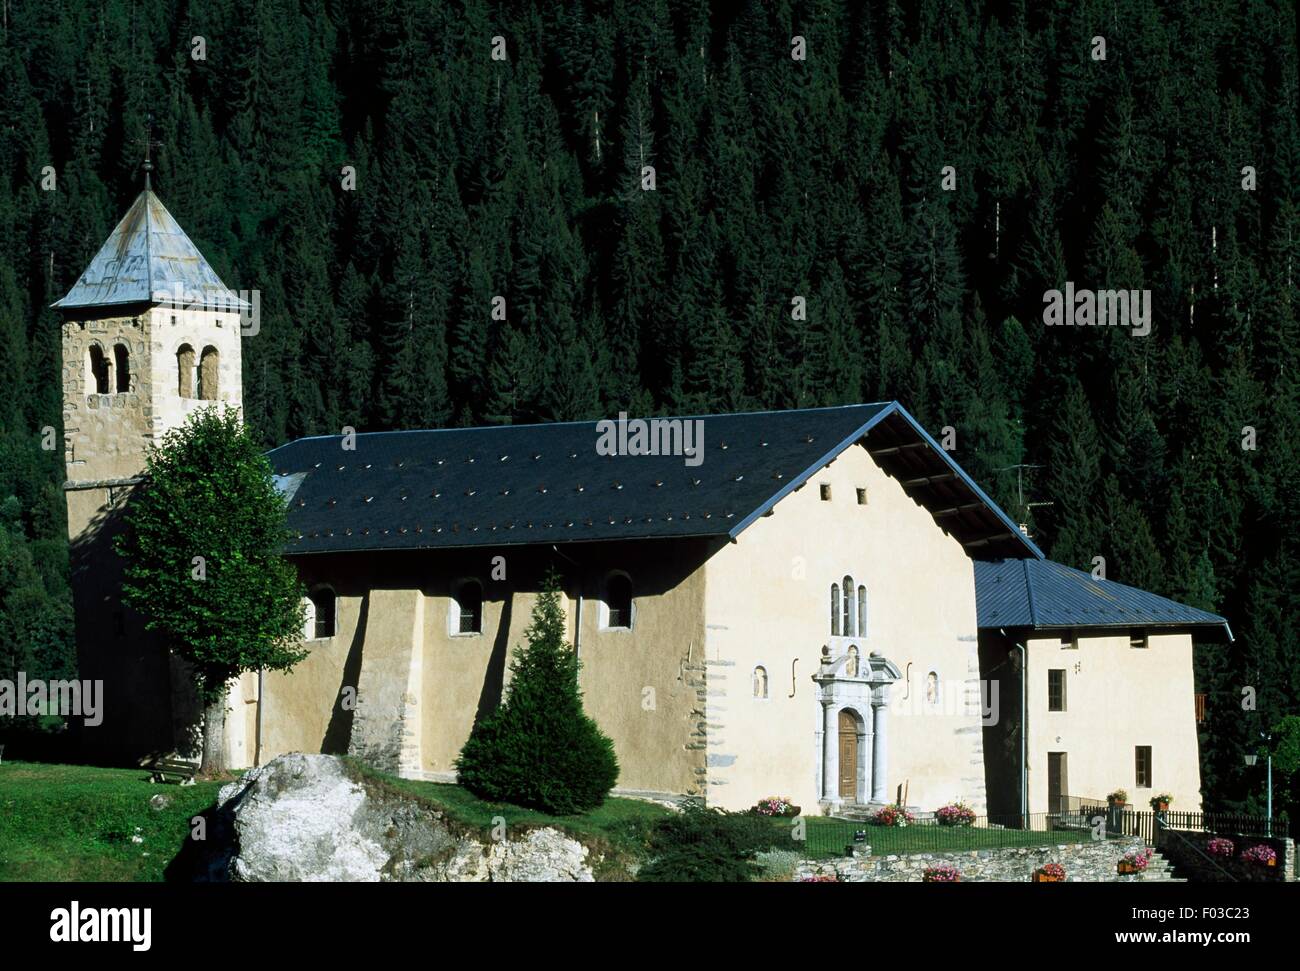 Church at Champagny-En-Vanoise, Vanoise National Park (Parc national de la Vanoise), Savoie, France. Stock Photo